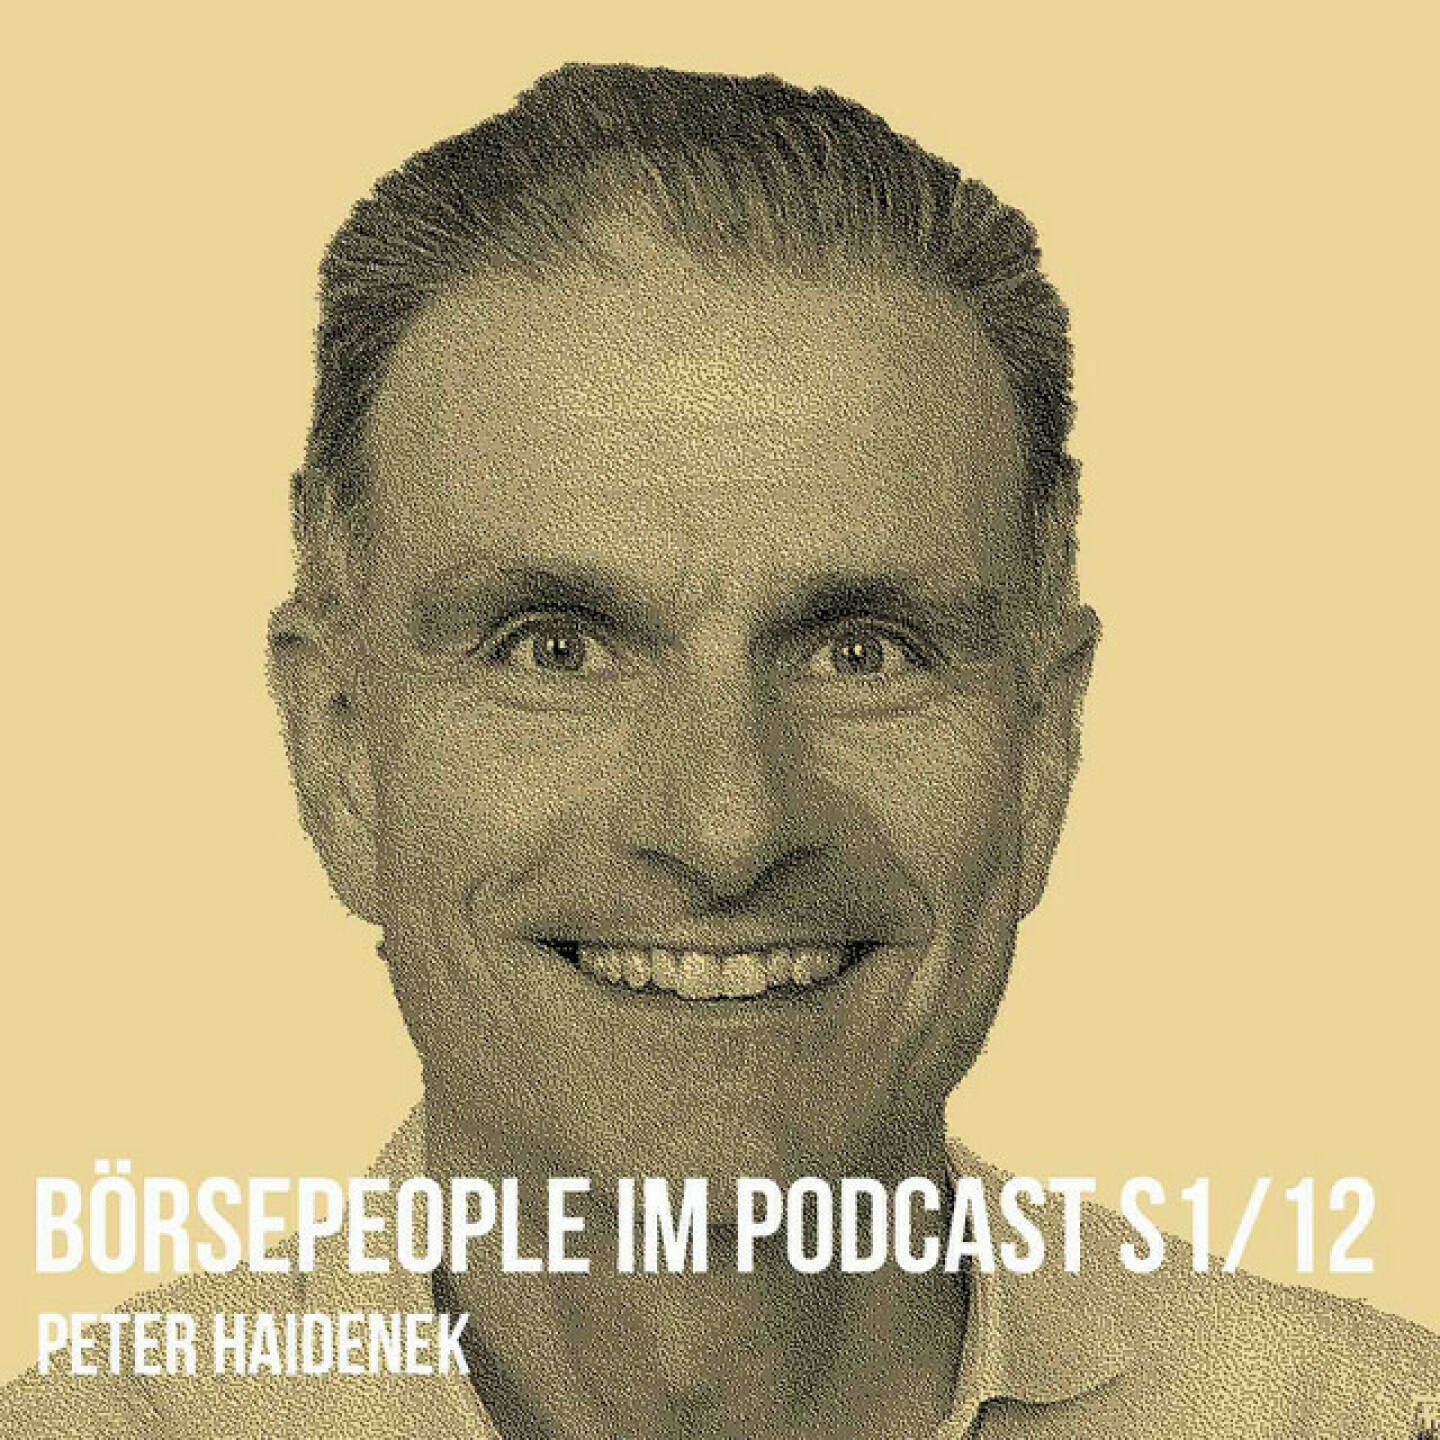 https://open.spotify.com/episode/4ZqQbjAKqTMzCjp88fZFZn
Börsepeople im Podcast S1/12: Peter Haidenek - <p>Peter Haidenek würde ebensogut in den Sport- wie in den Börsepodcast passen, ist er doch Vize-Weltmeister seiner Altersklasse im Triathlon. Der gebürtige Deutsche und langjährige Polytec-CFO wurde dafür im Jahr 2016 auch als einziger „Legionär“ (weil eben Deutscher, aber in Ö tätig) mit unserem Business Athlete Award ausgezeichnet. Und freilich reden wir in dieser Börsepeople-Folge auch über den trainingsintensiven Triathlon-Sport, machmal muss man halt hohe sportliche Ziele aufgrund beruflicher Professionalität zurückstellen. So auch heuer im Herbst, denn Peter ist seit kurzem CFO bei der aussichtsreichen Firma Croma Pharma, die auf die industrielle Fertigung von Hyaluronsäure-Spritzen spezialisiert ist. Peters Credits sind mächtig: Er hat seinerzeit u.a. die Invester Relations bei Lufthansa und auch adidas aufgebaut. Und er ist einer meiner allerliebsten Plauderlauf-Partner. </p><br/><p>About: Die Serie Börsepeople findet m Rahmen von http://www.christian-drastil.com/podcast statt. Es handelt sich dabei um typische Personality- und Werdegang-Gespräche. Die Season 1 umfasst unter dem Motto „22 Börsepeople in Summer 22“ eben 22 Podcast-Talks, divers zusammengesetzt. Presenter ist die Management Factory (<a href=https://www.mf.ag rel=nofollow>https://www.mf.ag</a> ). </p><br/><p>Bewertungen bei Apple (oder auch Spotify) machen mir Freude: <a href=https://podcasts.apple.com/at/podcast/christian-drastil-wiener-börse-sport-musik-und-mehr-my-life/id1484919130 rel=nofollow>https://podcasts.apple.com/at/podcast/christian-drastil-wiener-börse-sport-musik-und-mehr-my-life/id1484919130</a> .</p>